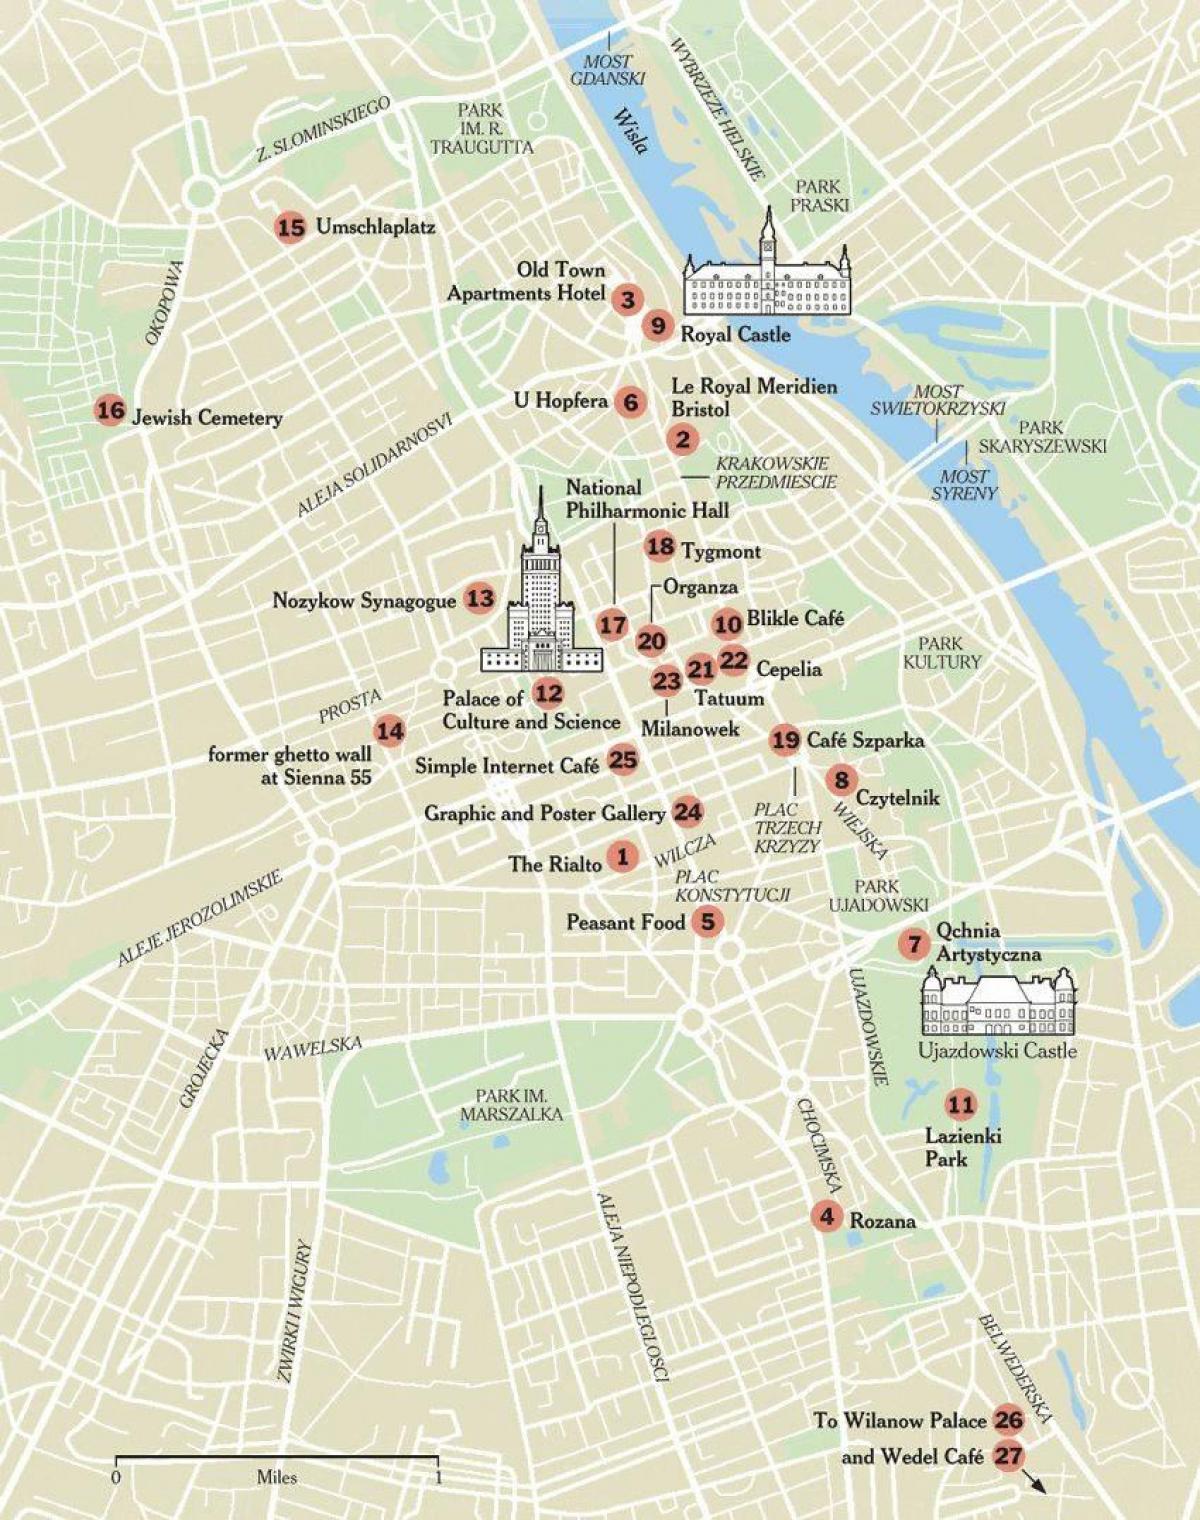 mapa ng Warsaw sa mga atraksyong panturista